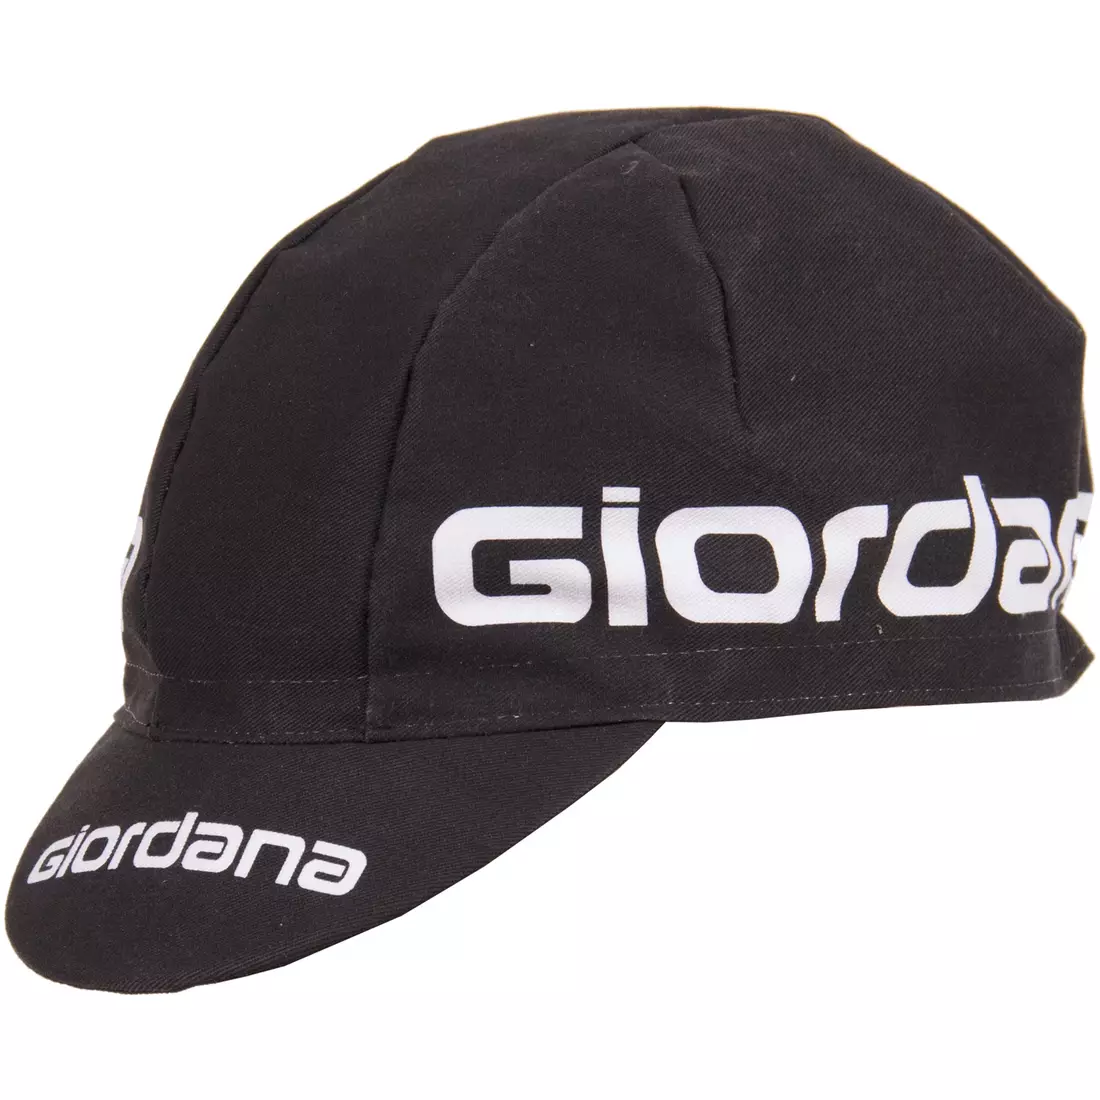 Cyklistická čepice GIORDANA SS18 - Logo Giordana - Černá GI-S5-COCA-GIOR-BLCK jedna velikost